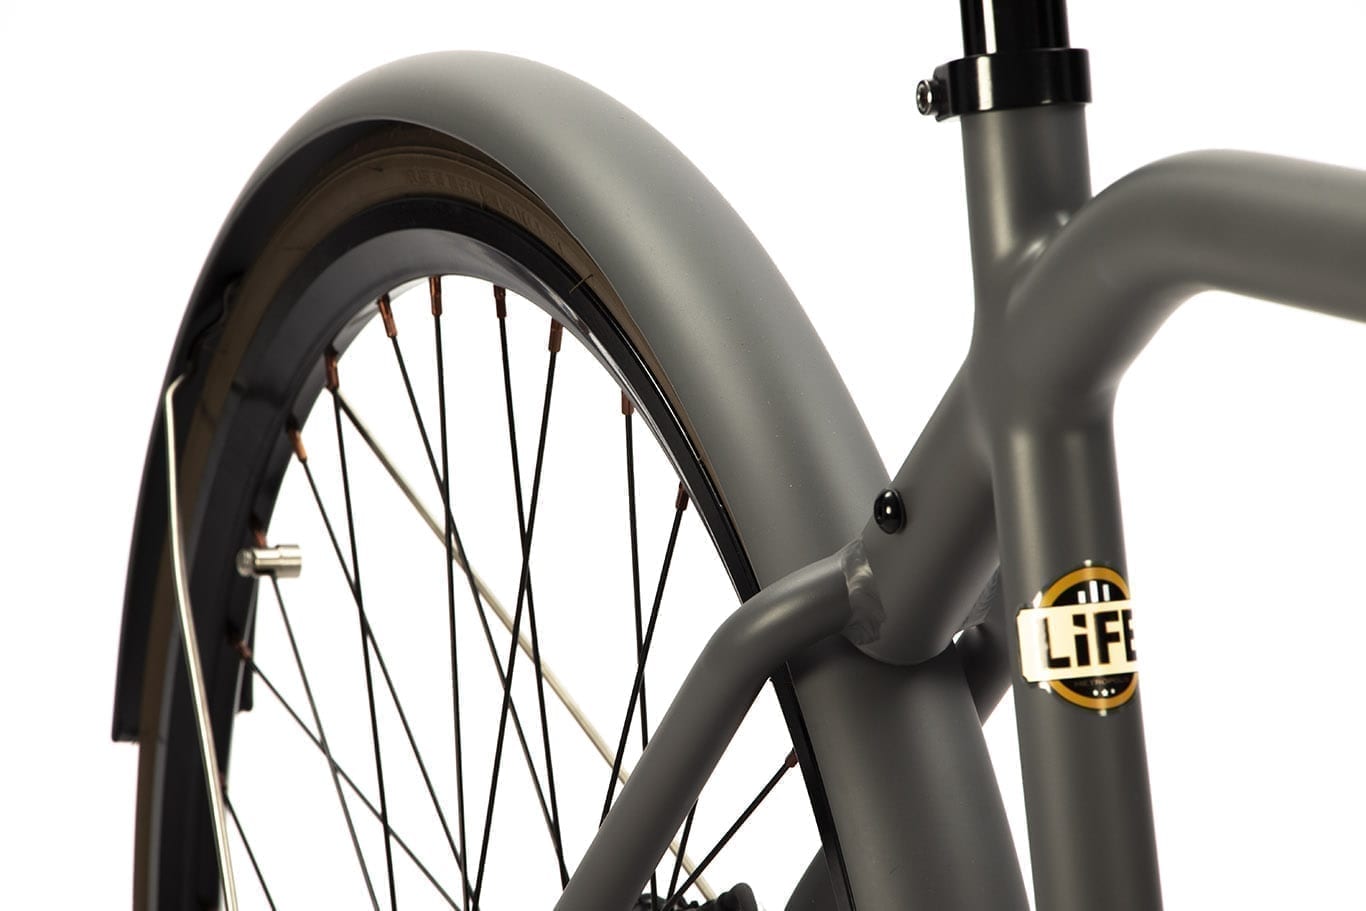 Vélo urbain LiFE Electrique Gris N°5 Design électrique peinture mate gris foncé